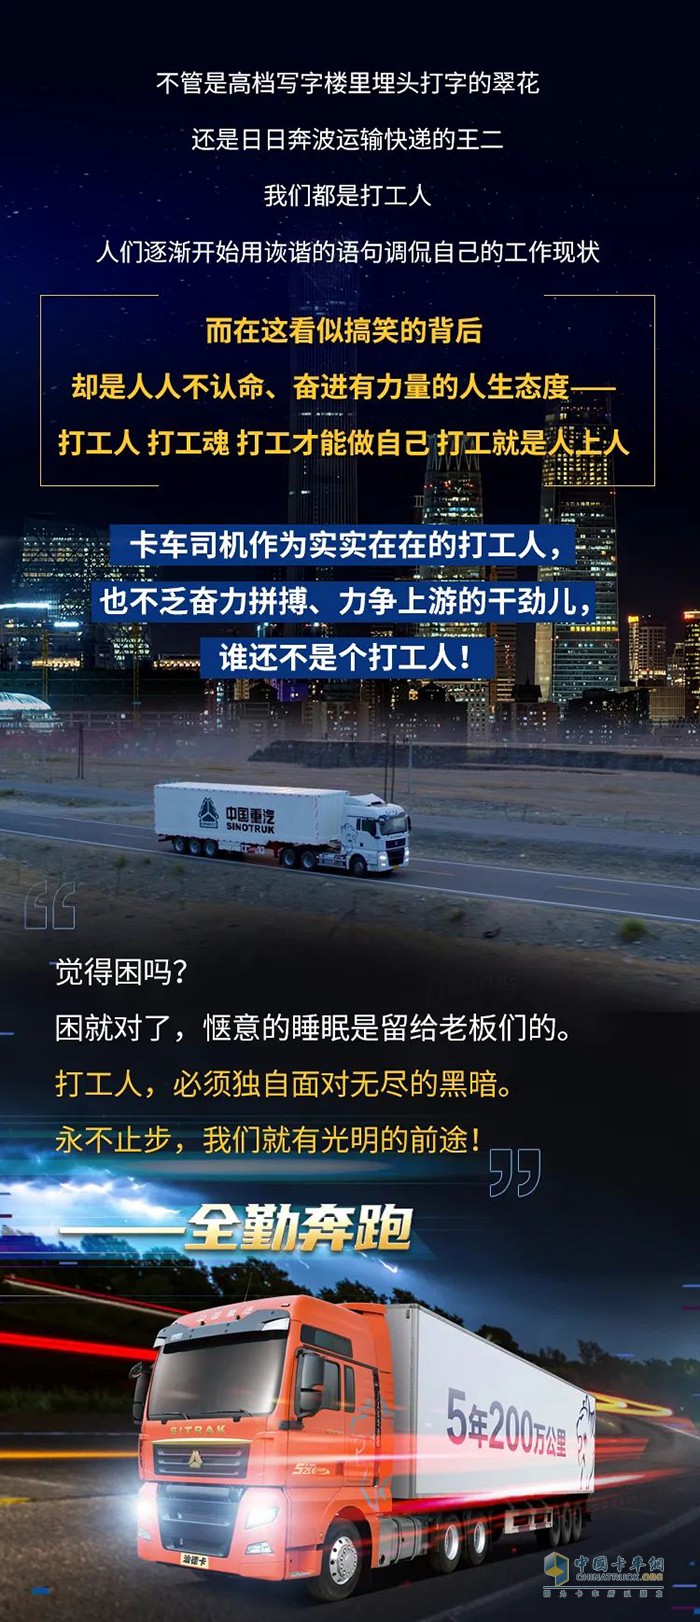 中国卡车司机3000万，都是平凡的打工人